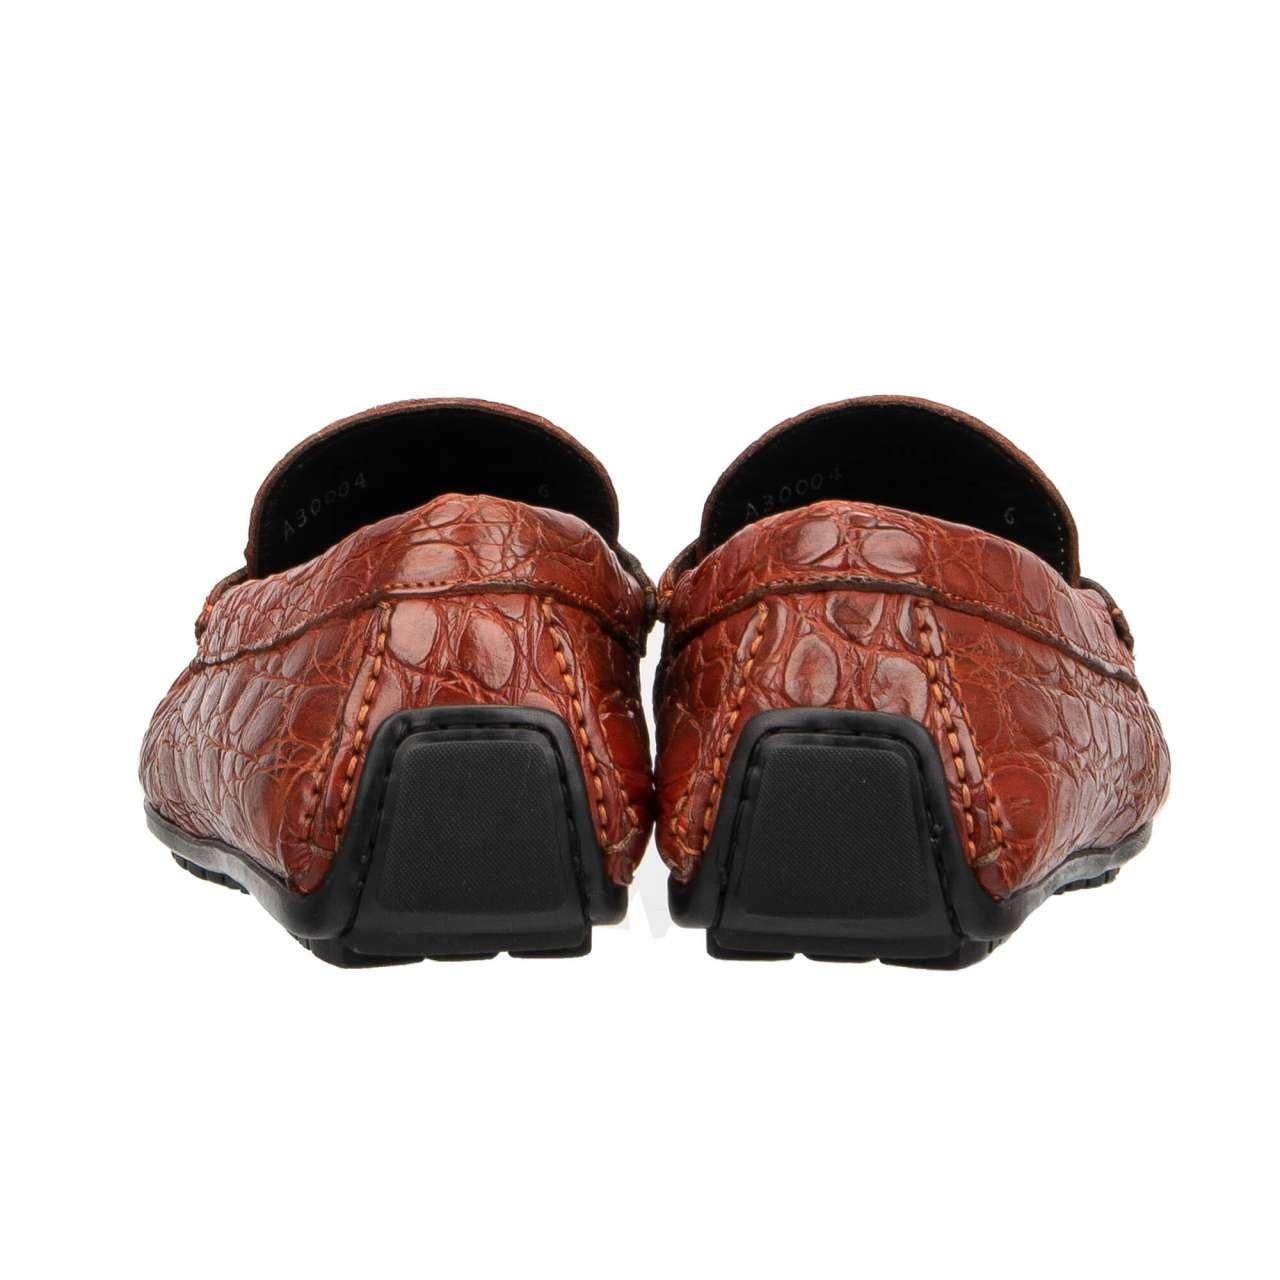 Dolce & Gabbana - Caiman Leather Moccasins Loafer Shoes RAGUSA Orange EUR 40 For Sale 1